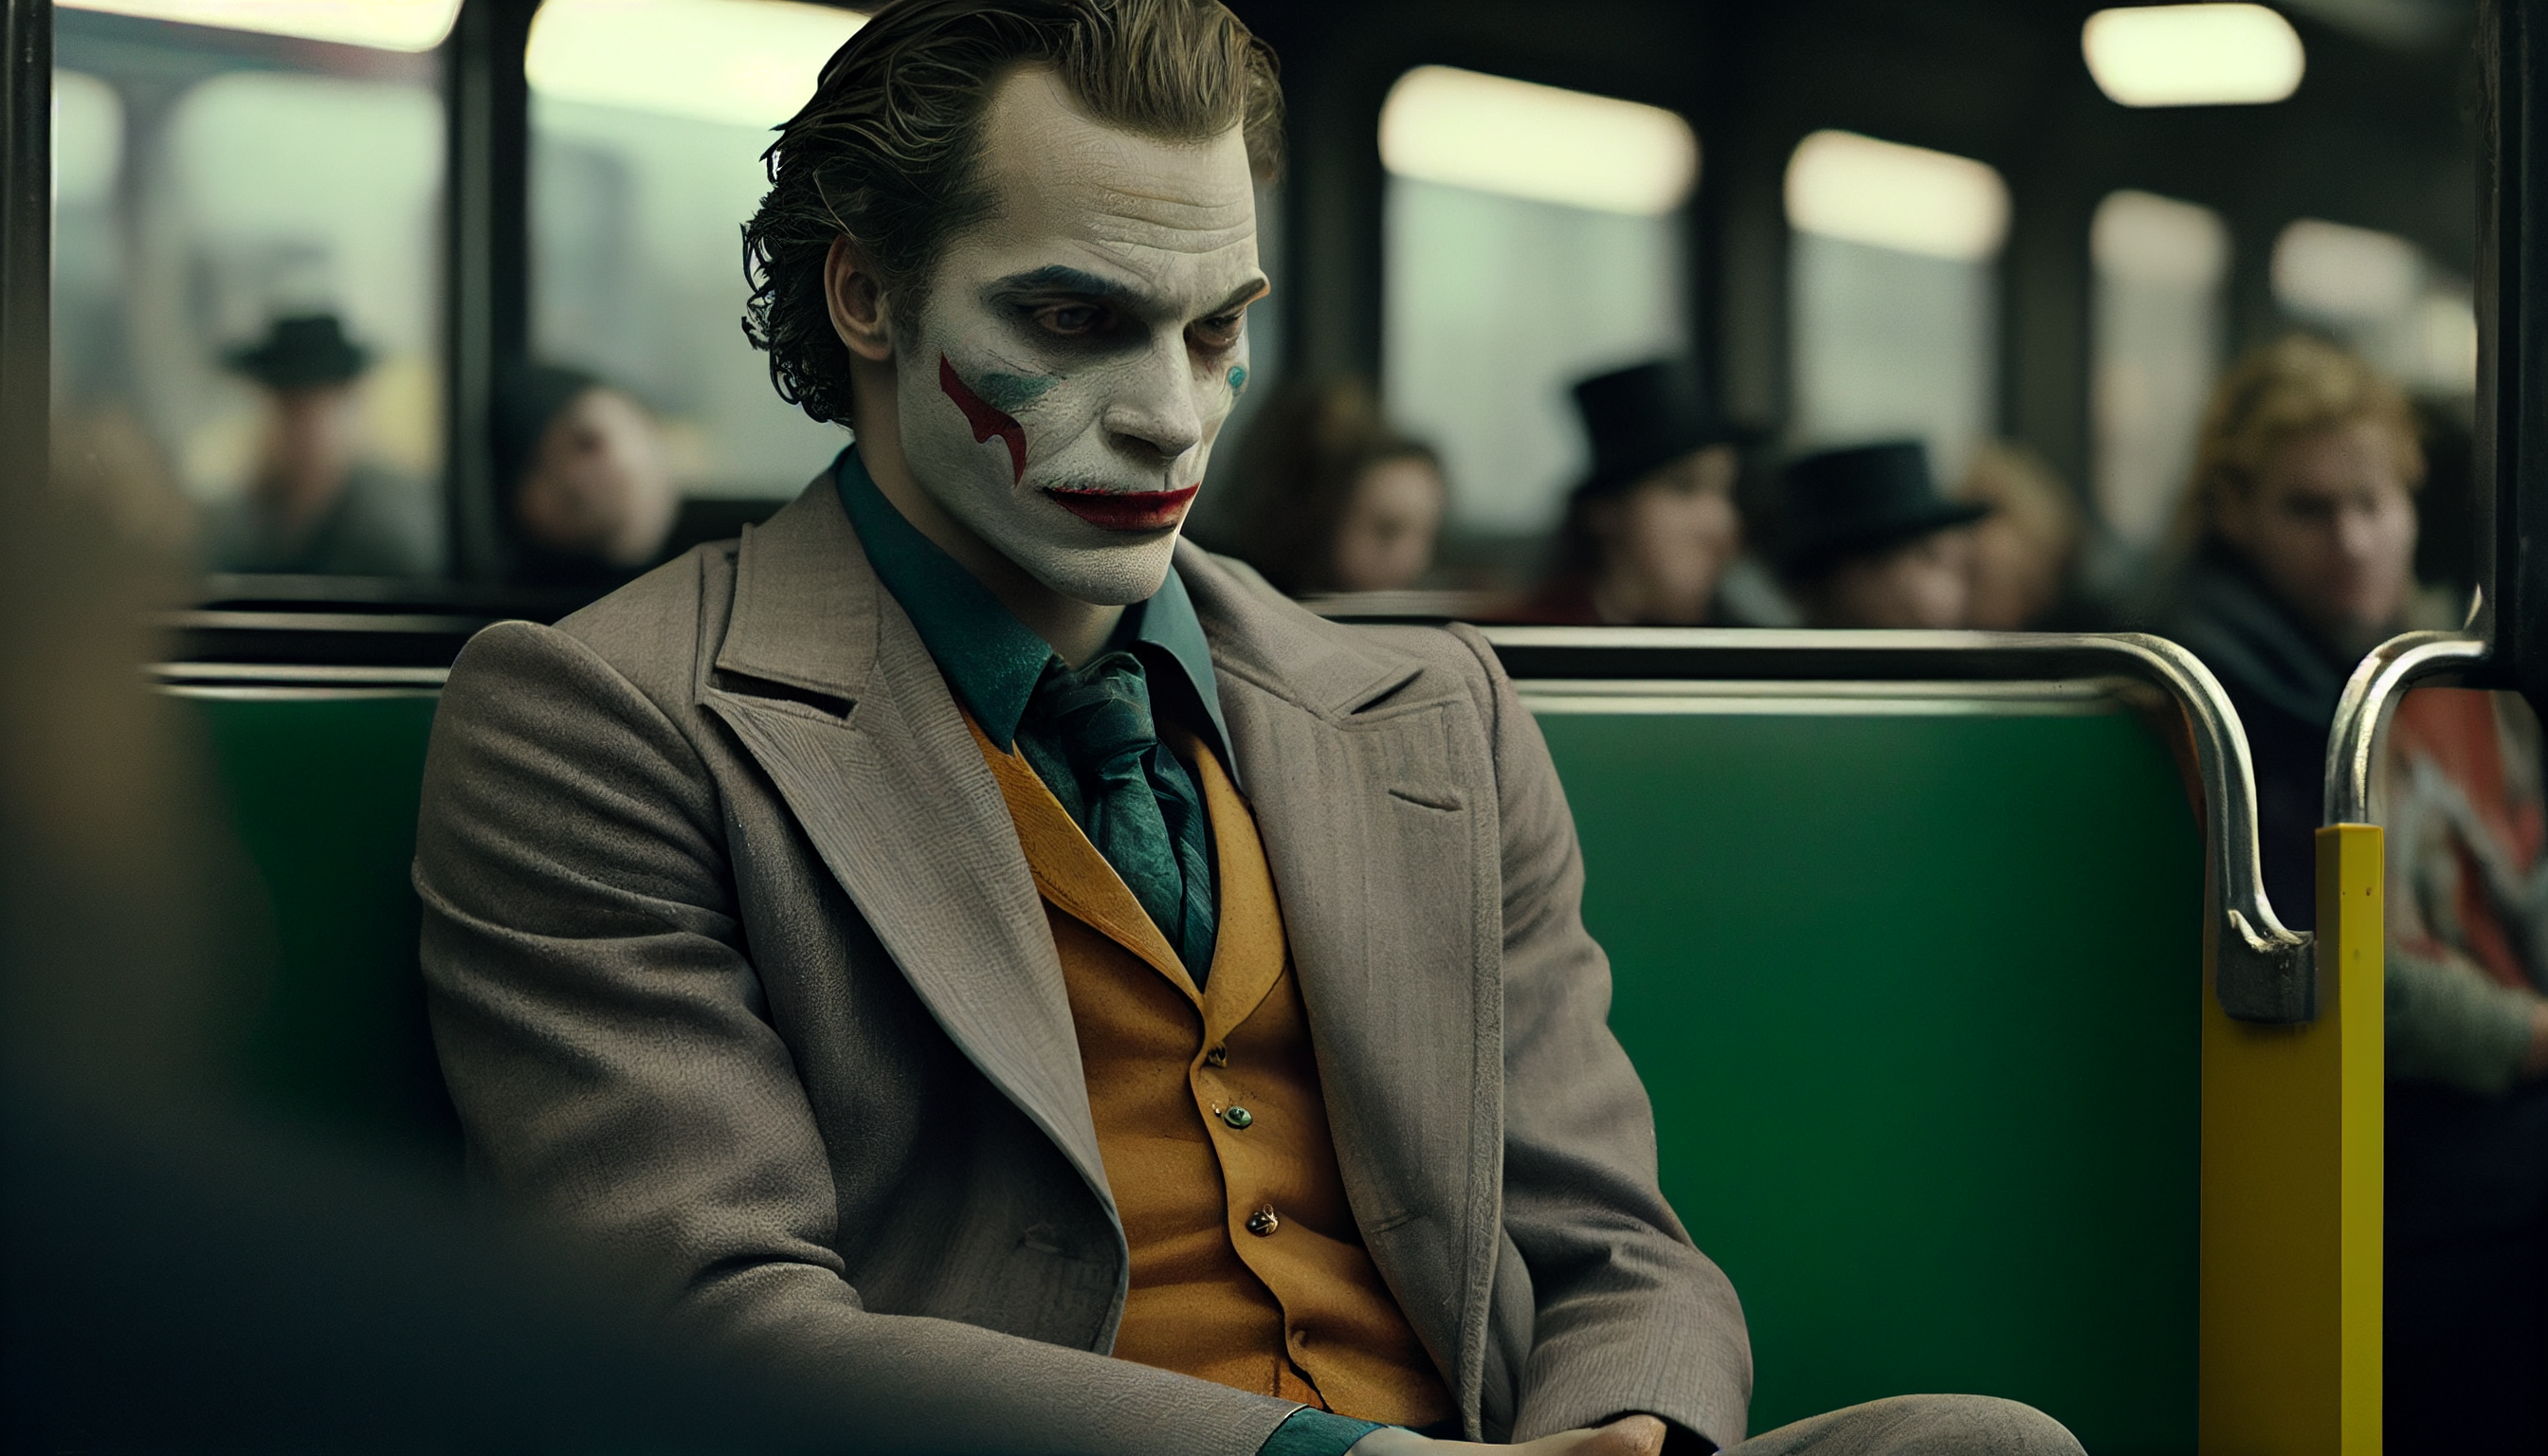 Joker Joker 2019 Movie Face Makeup Clown Interior Sitting Suits 2688x1536